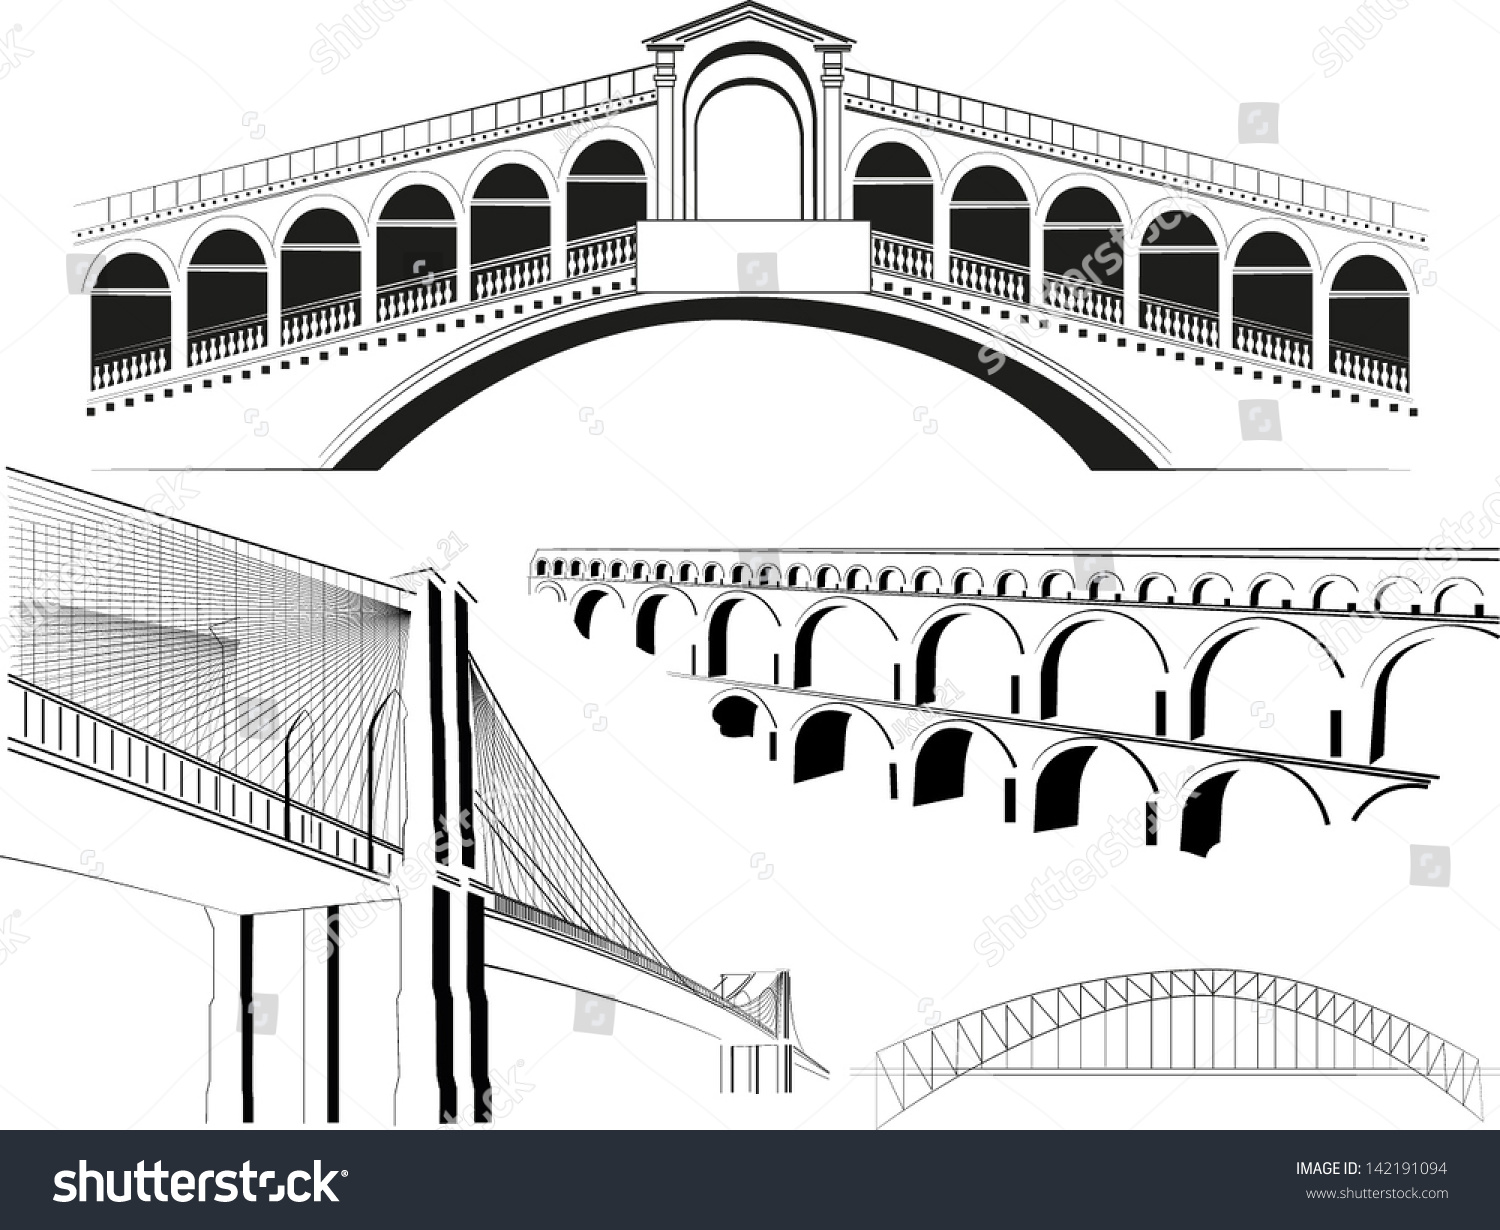 SVG of famous bridges svg